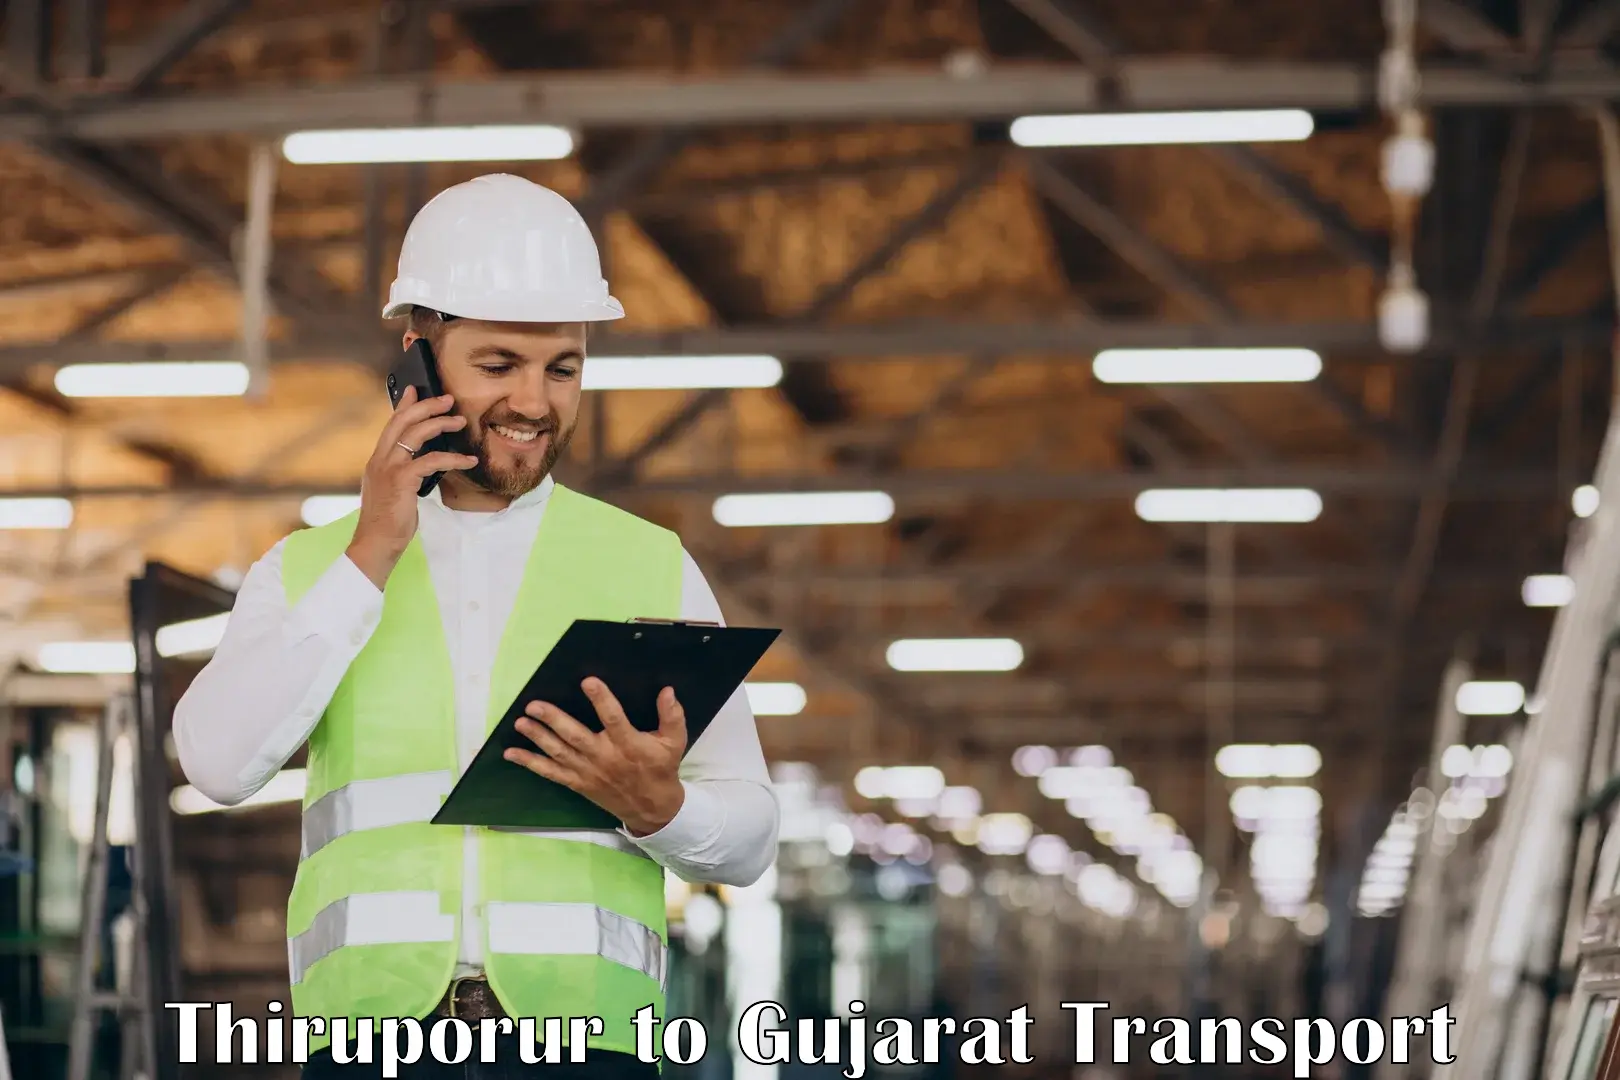 Furniture transport service Thiruporur to Gujarat